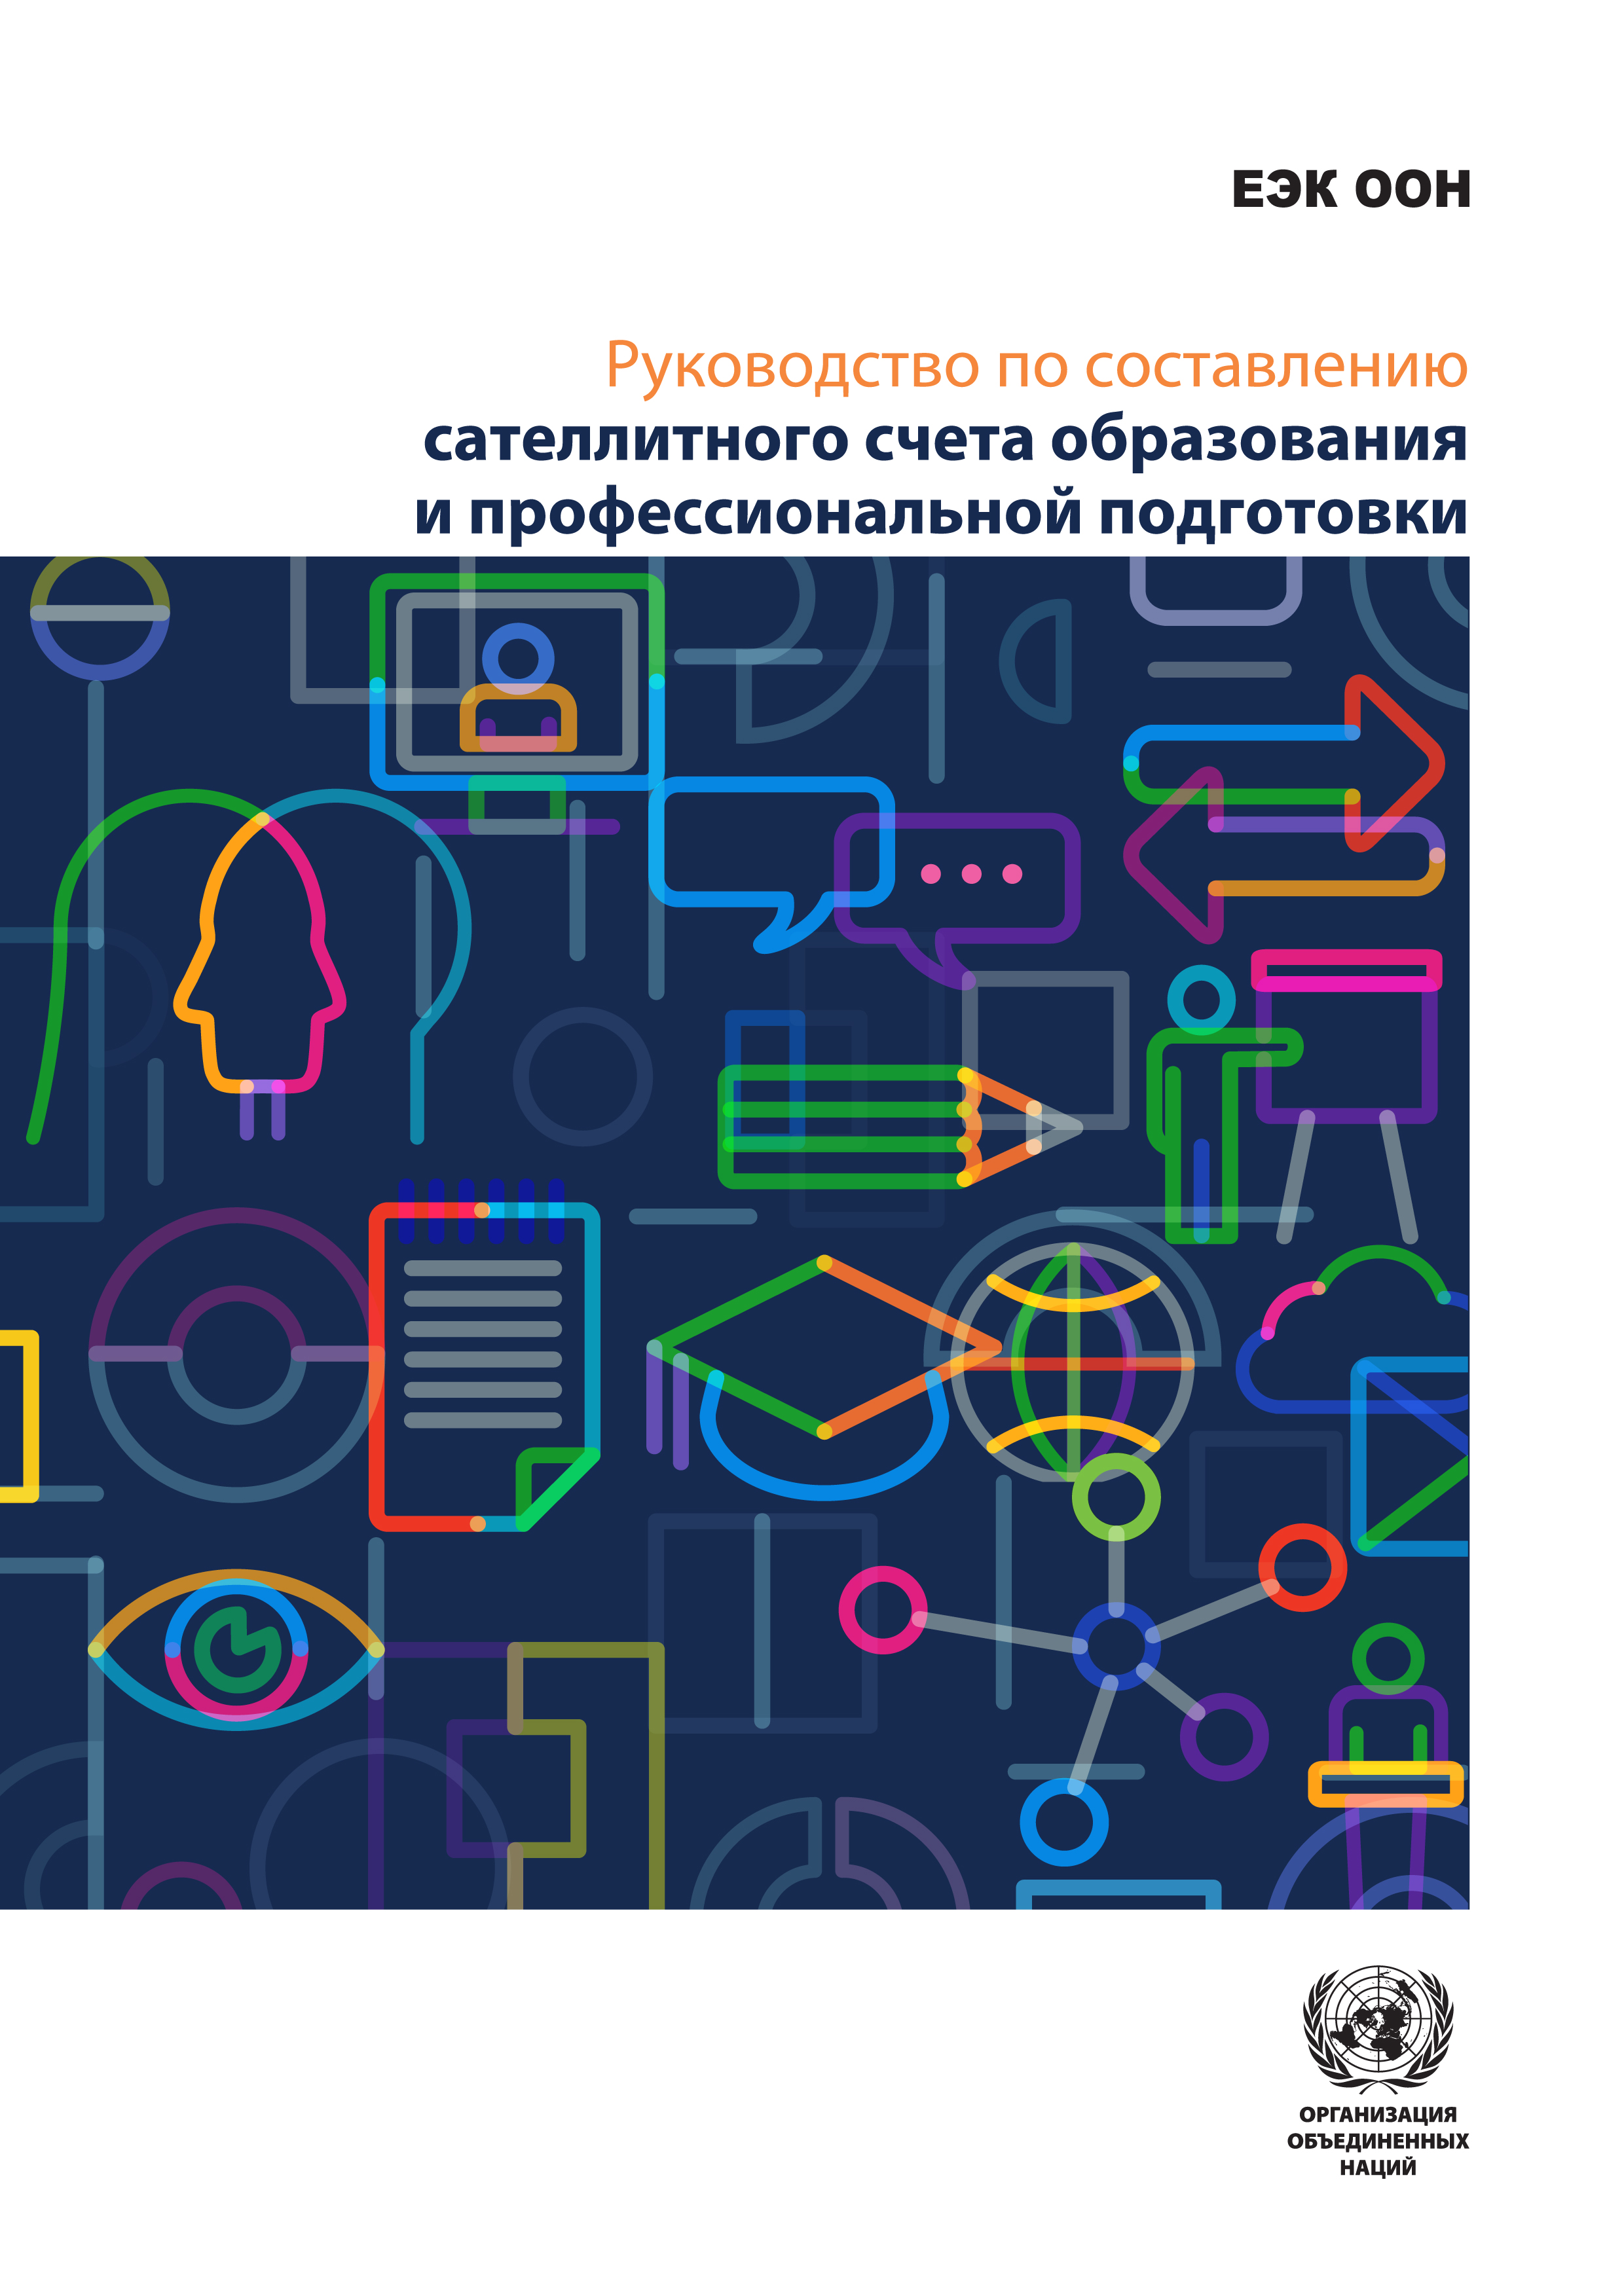 image of Составление сателлитного счета образования и профессиональной подготовки в Республике Беларусь